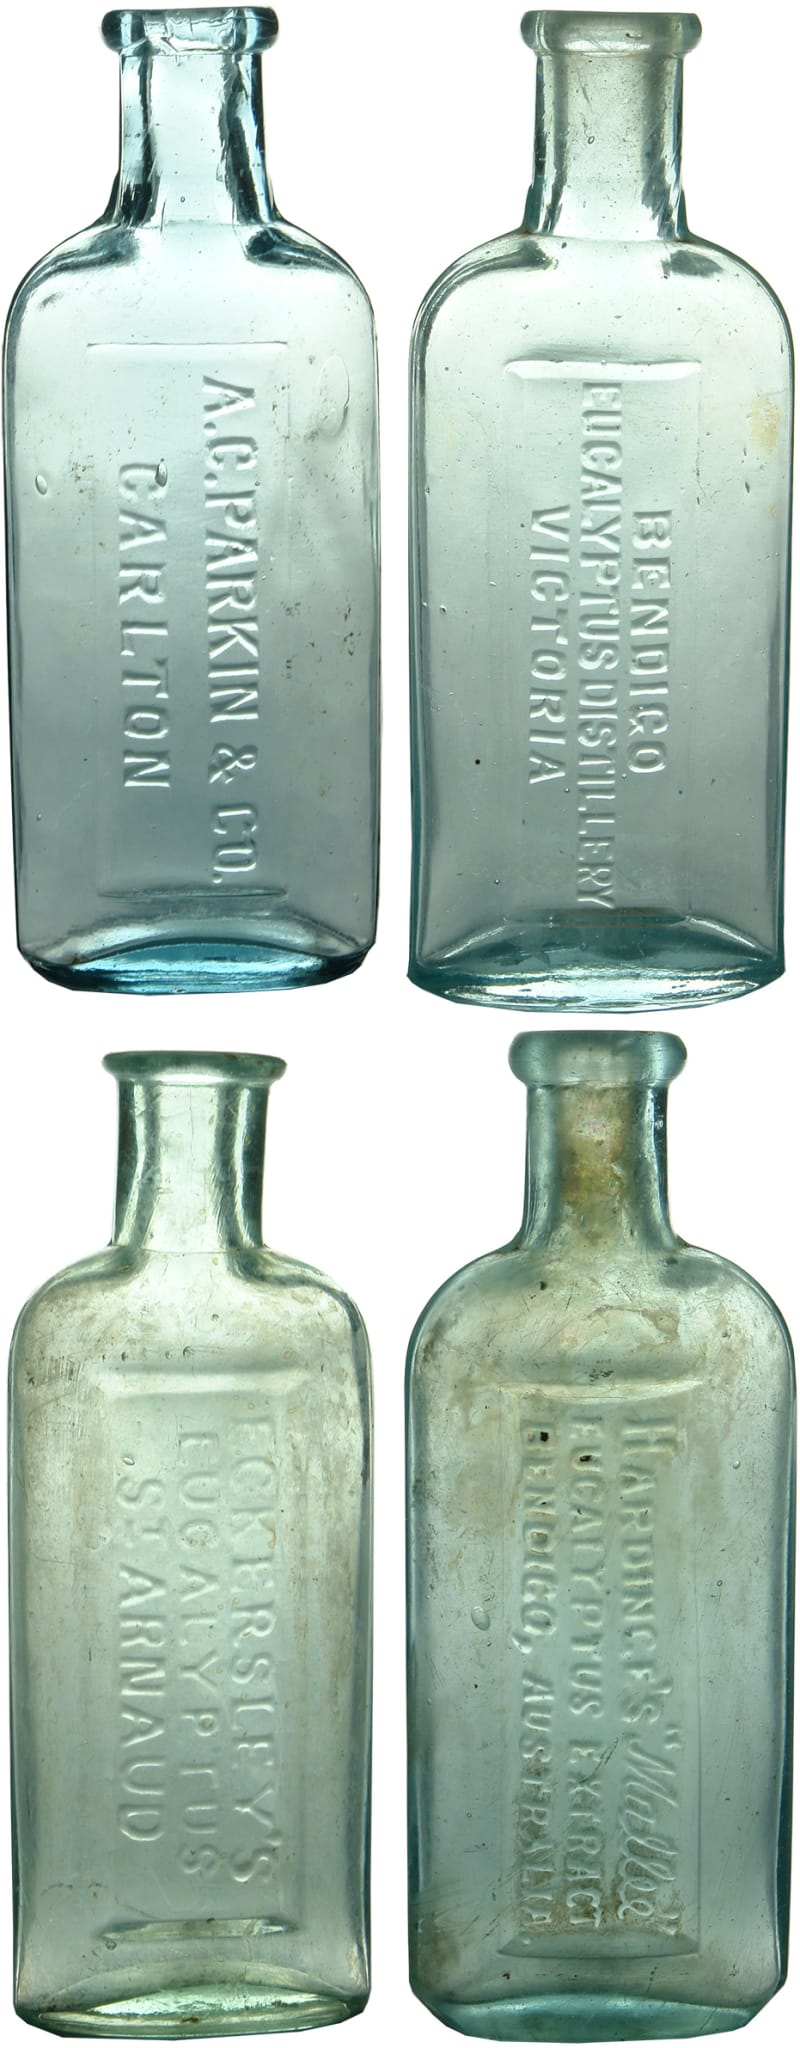 Old Antique Eucalyptus Oil Bottles